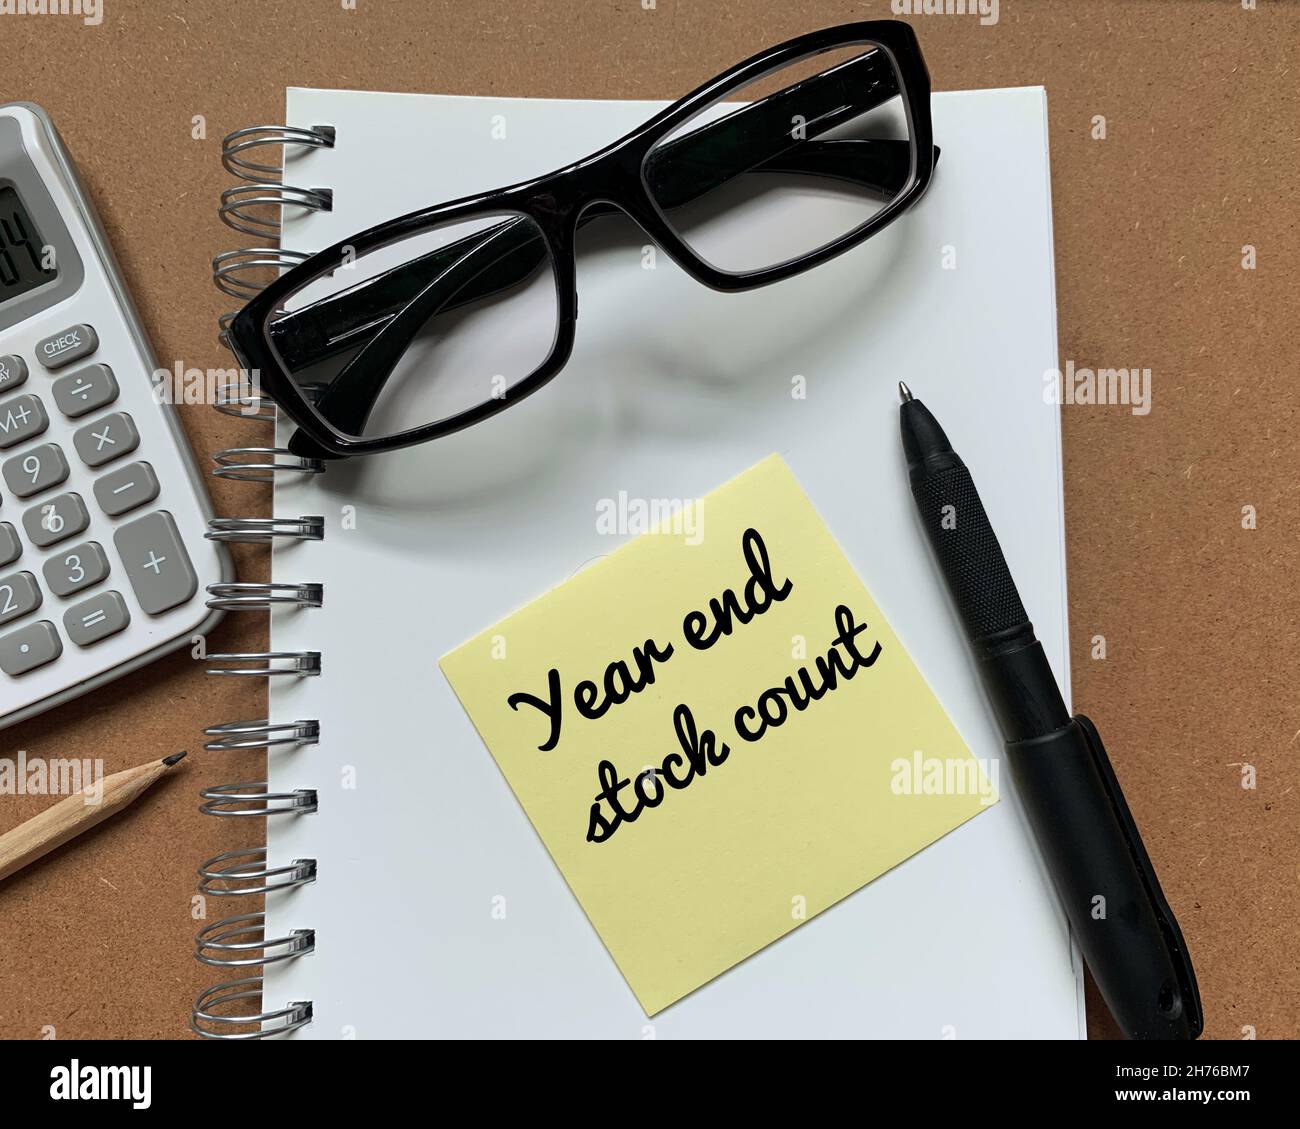 Text zum Jahresabschluss auf Haftnotiz mit Berechnung, Bleistift, Stift und Brille neben einem Notizblock Stockfoto